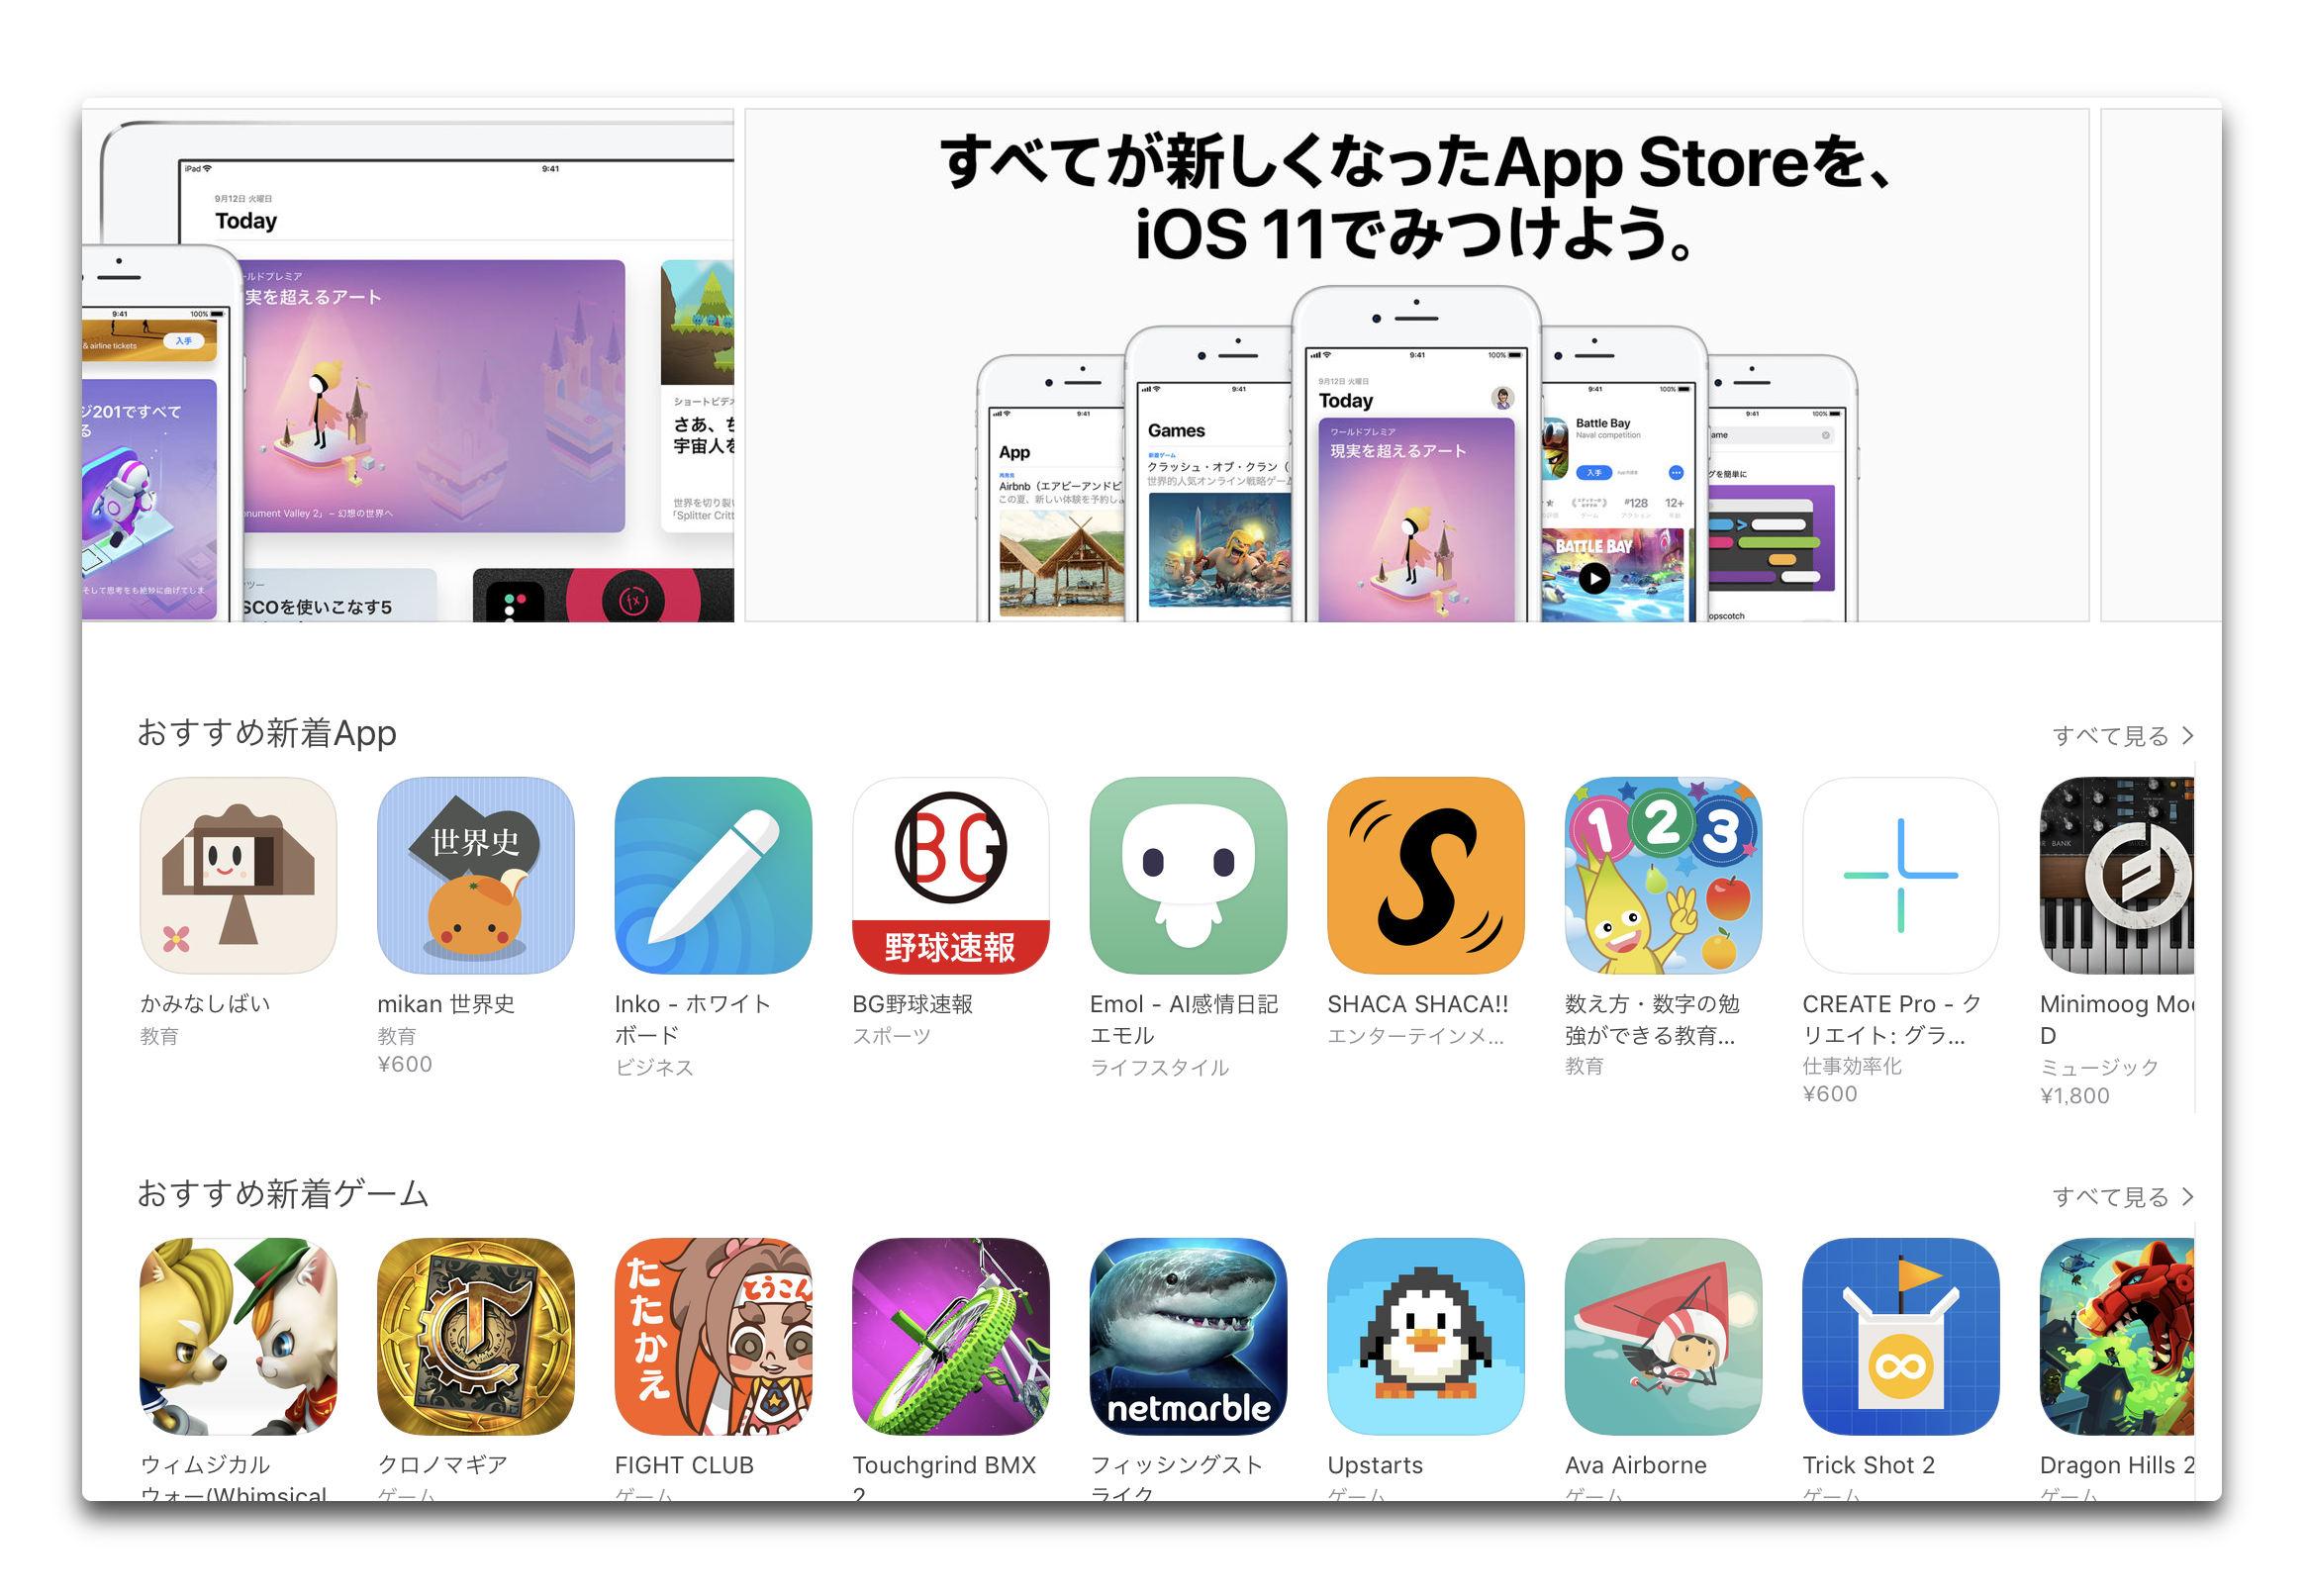 AppleのiOS App Storeは、Google Playのサービスに対して優位に立っています